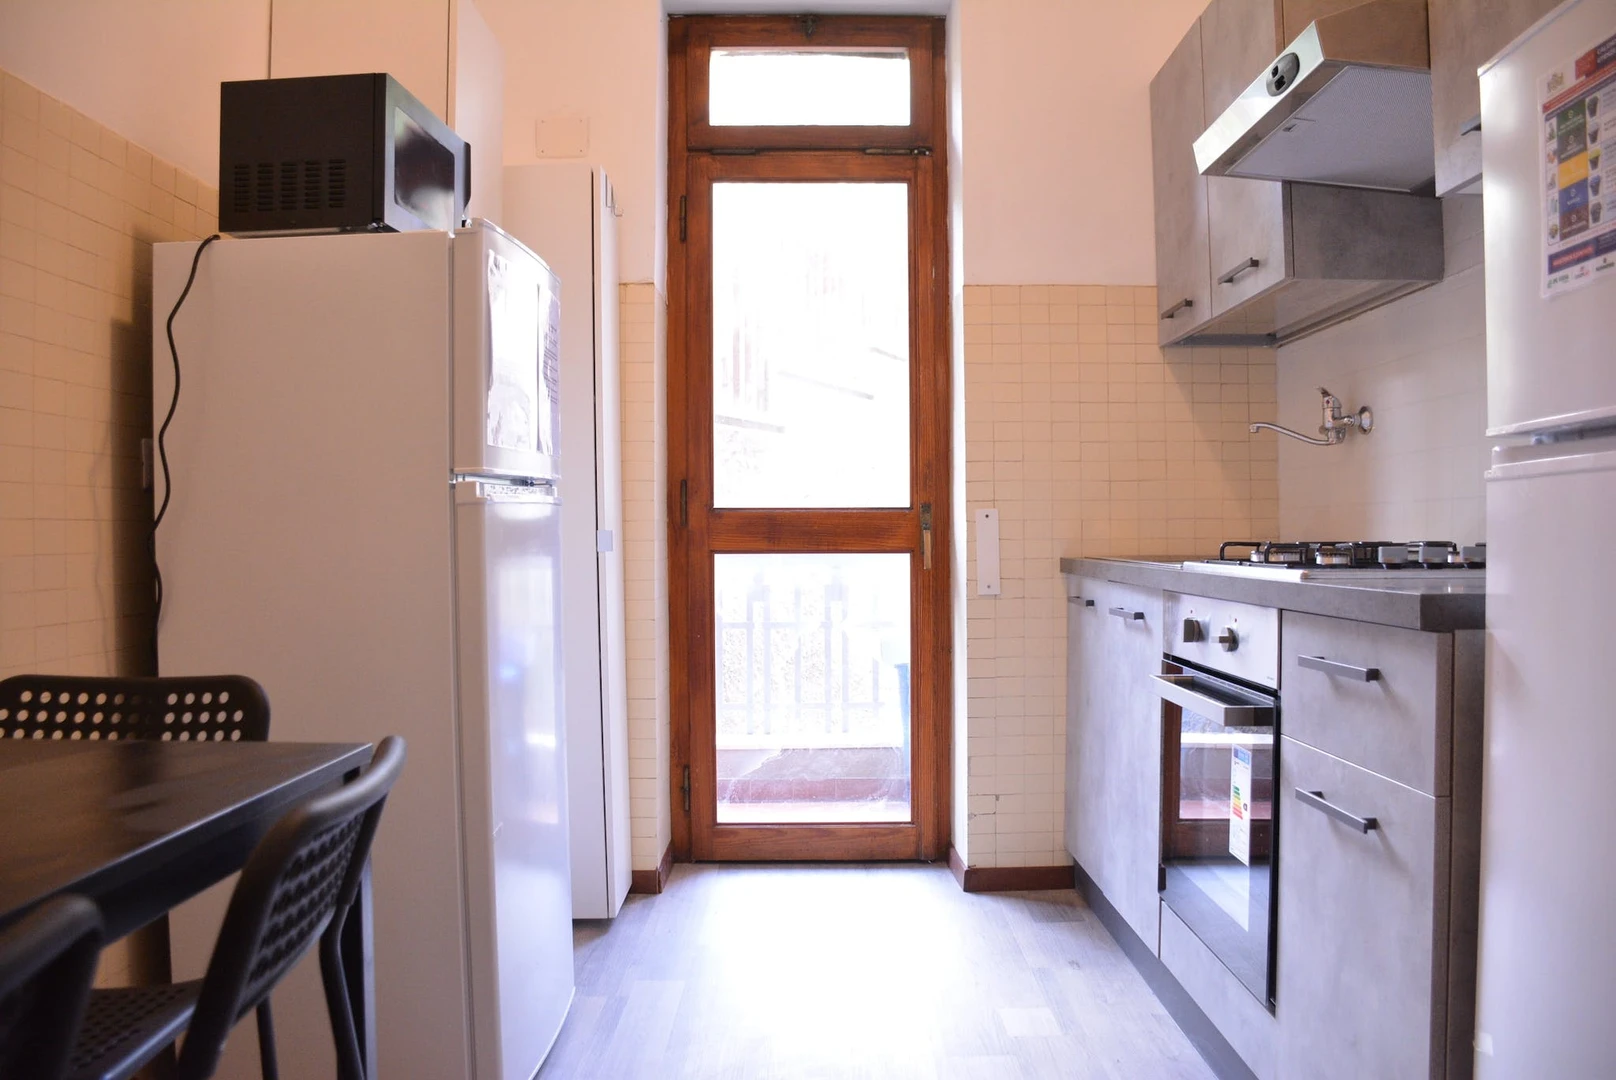 Room for rent in a shared flat in Casteddu/cagliari